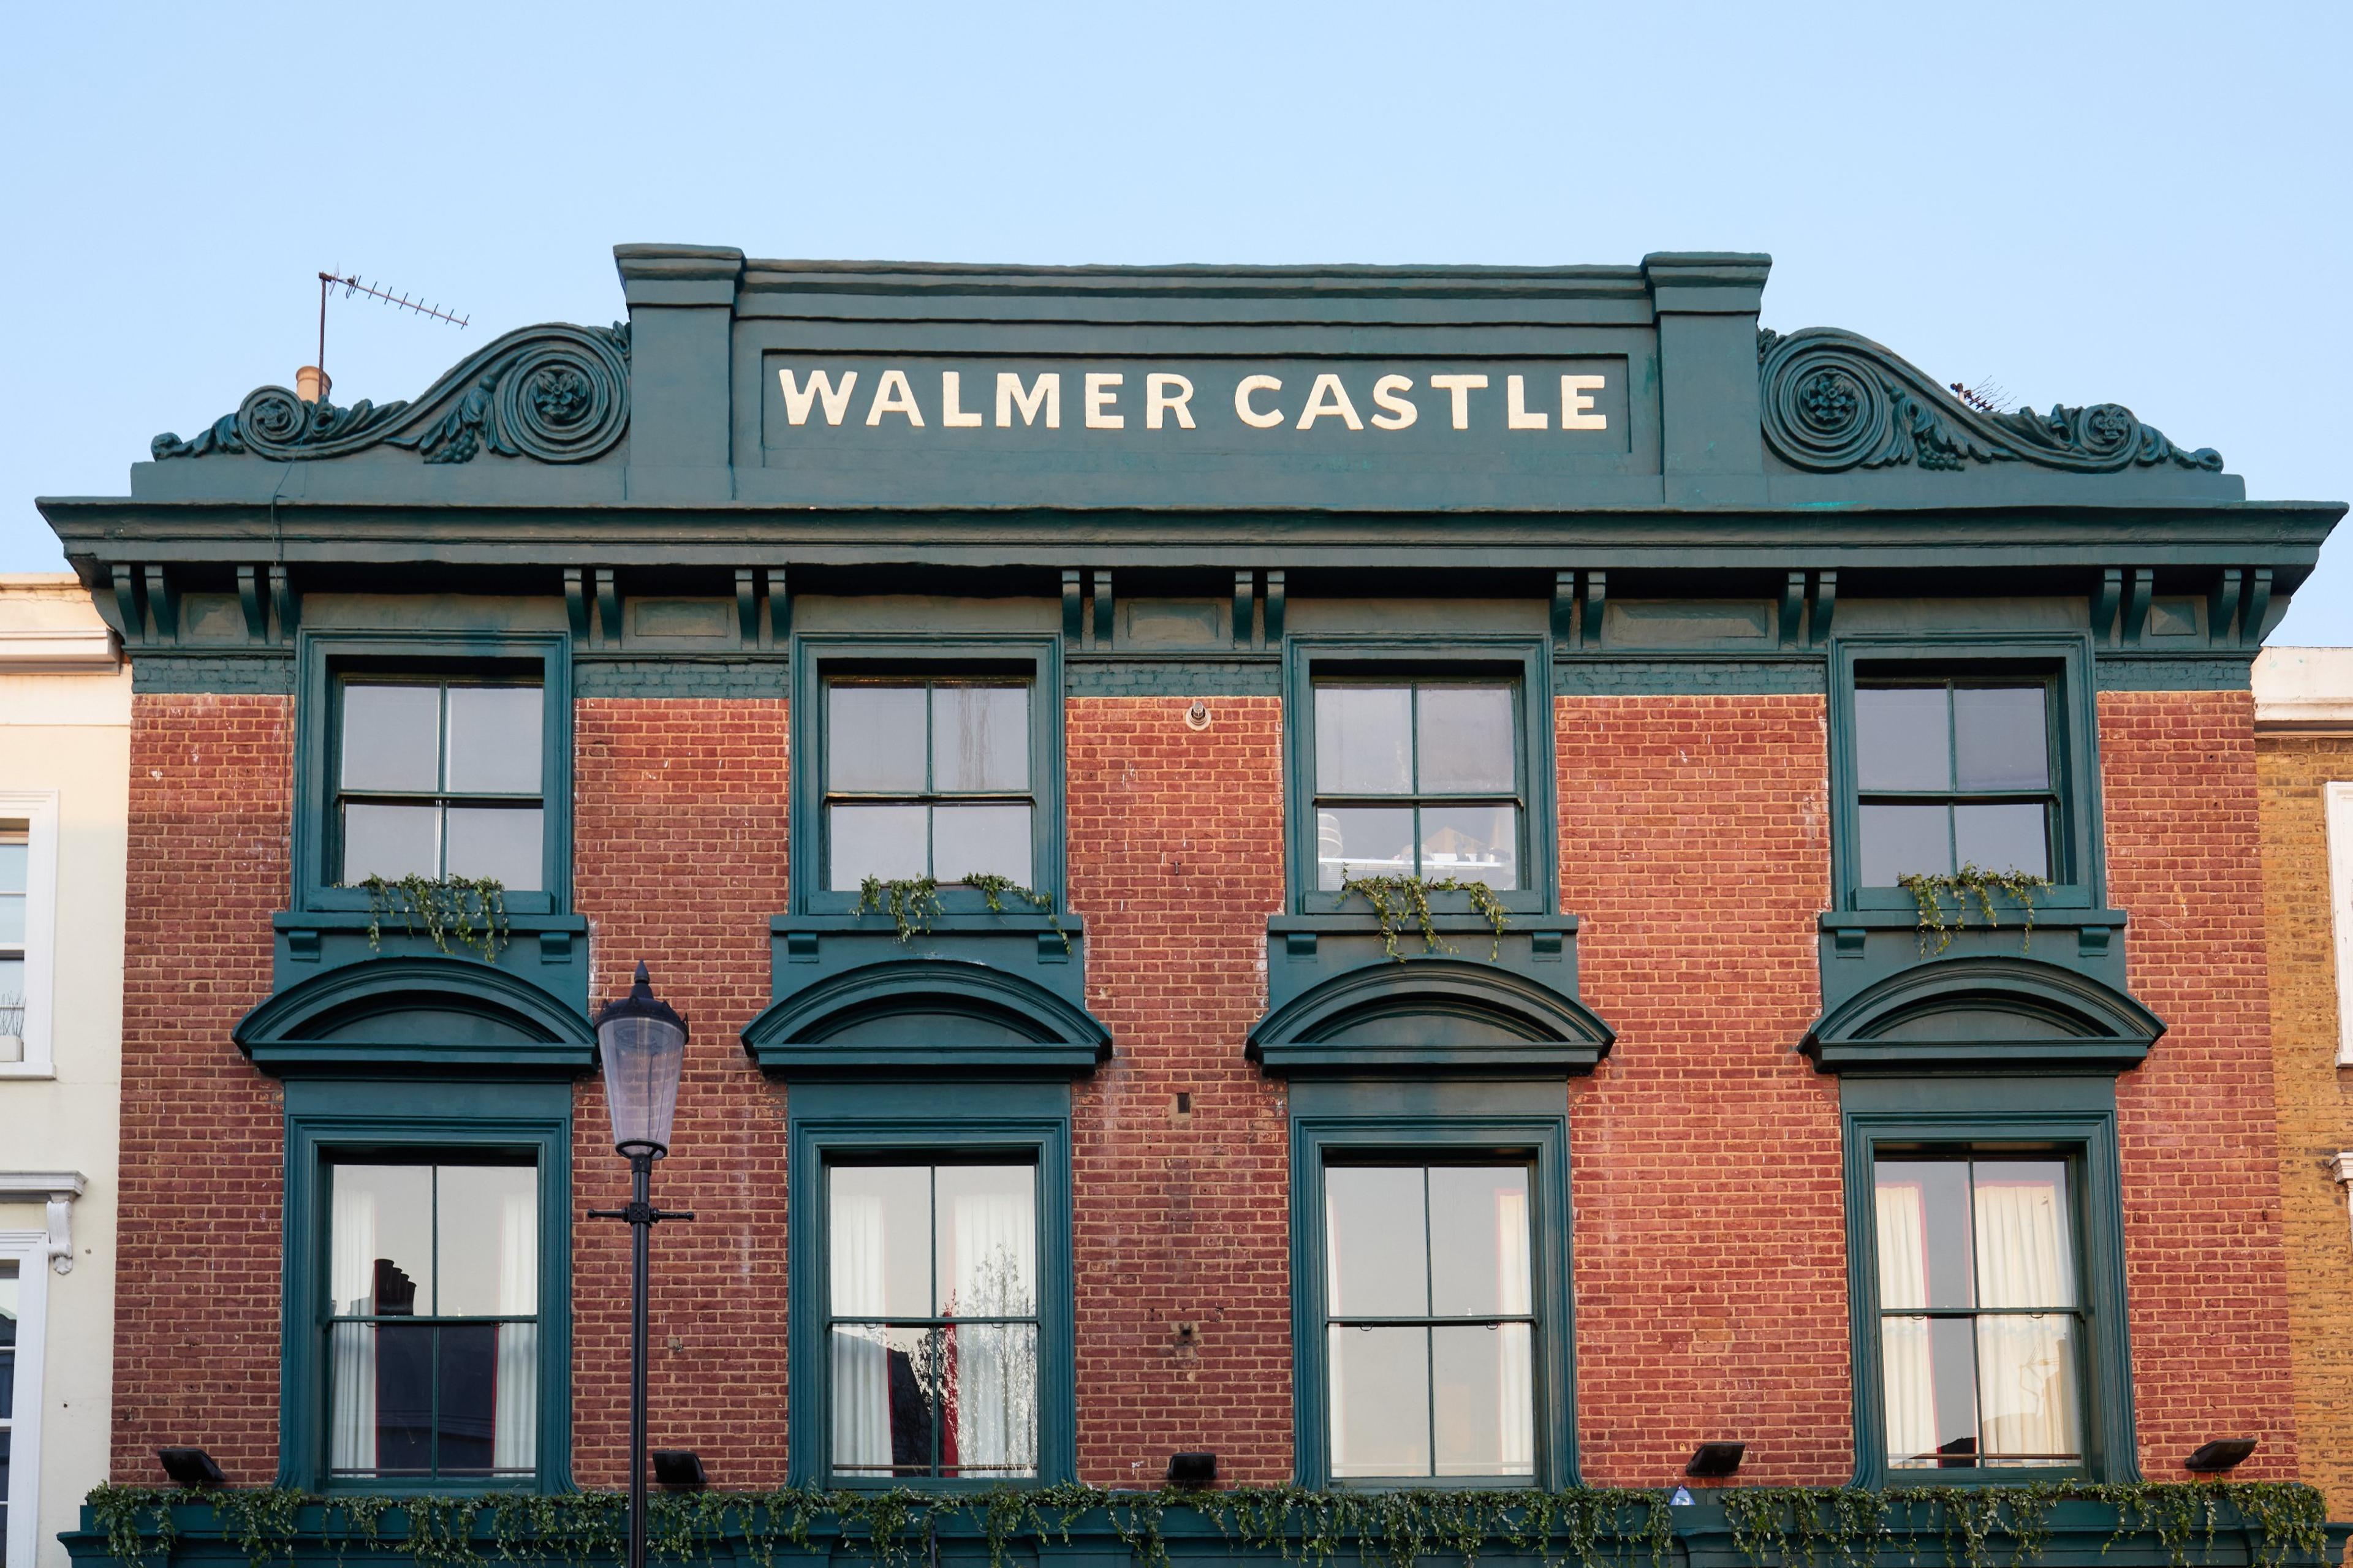 The Walmer Castle